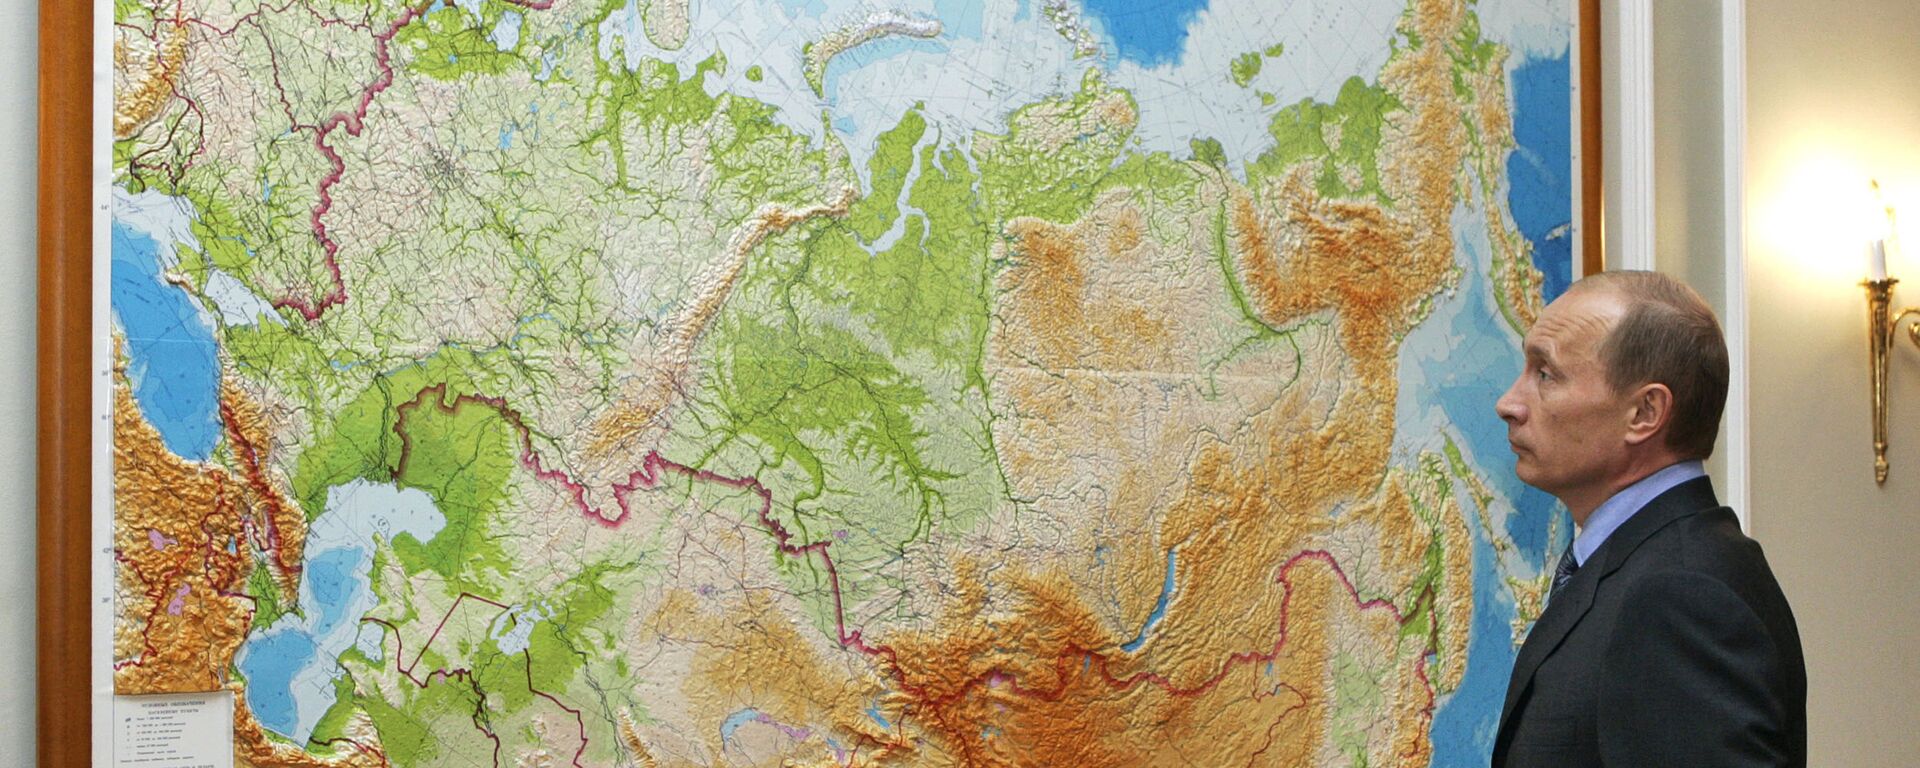 Руски председник Владимир Путин проучава карту своје земље - Sputnik Србија, 1920, 09.12.2021